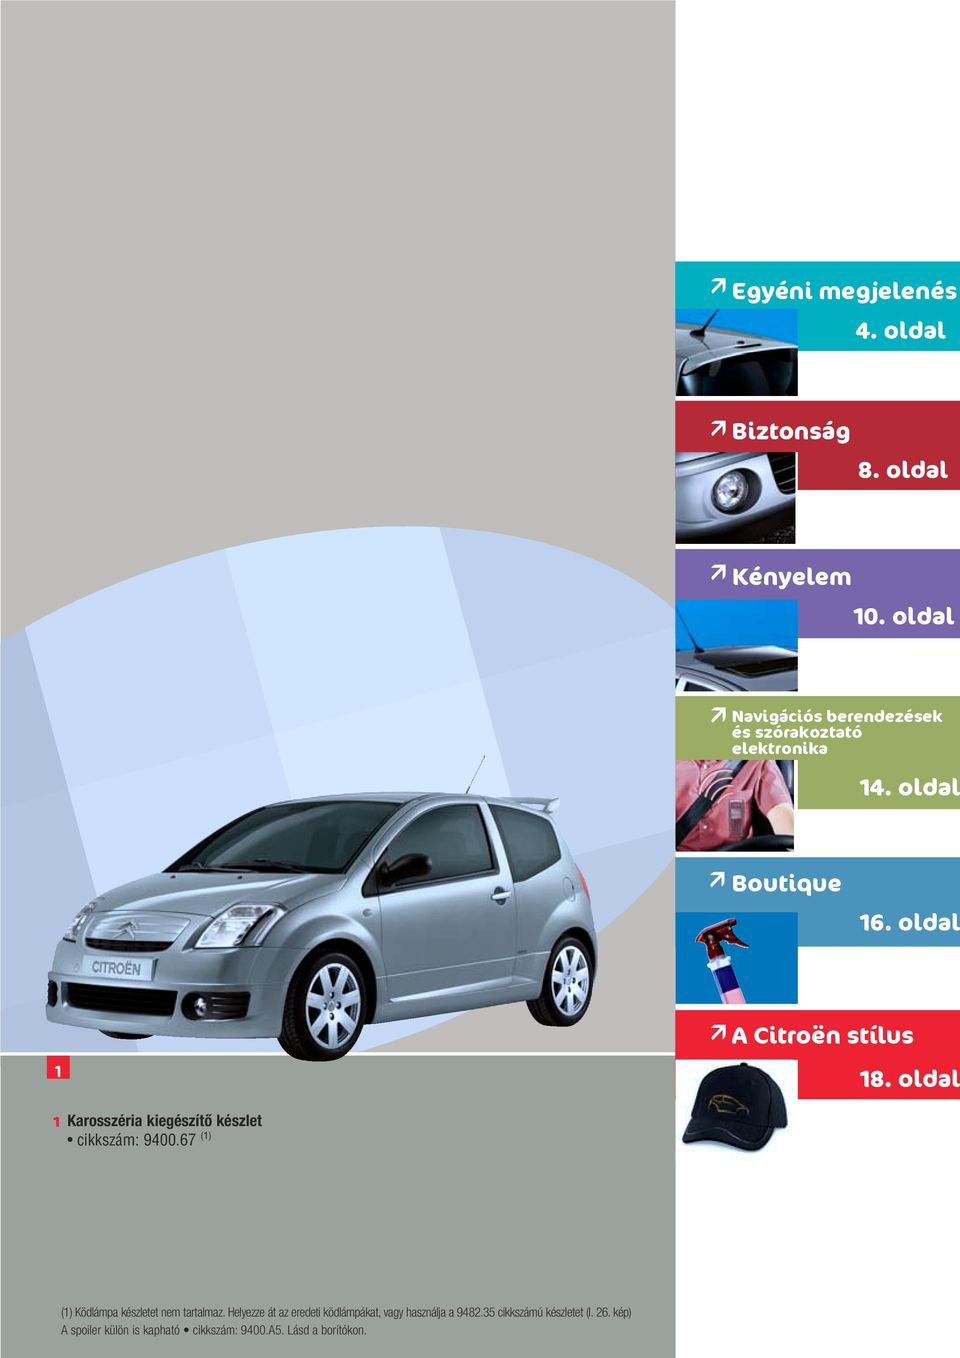 oldal A Citroën stílus 1 18. oldal 1 Karosszéria kiegészítô készlet cikkszám: 9400.